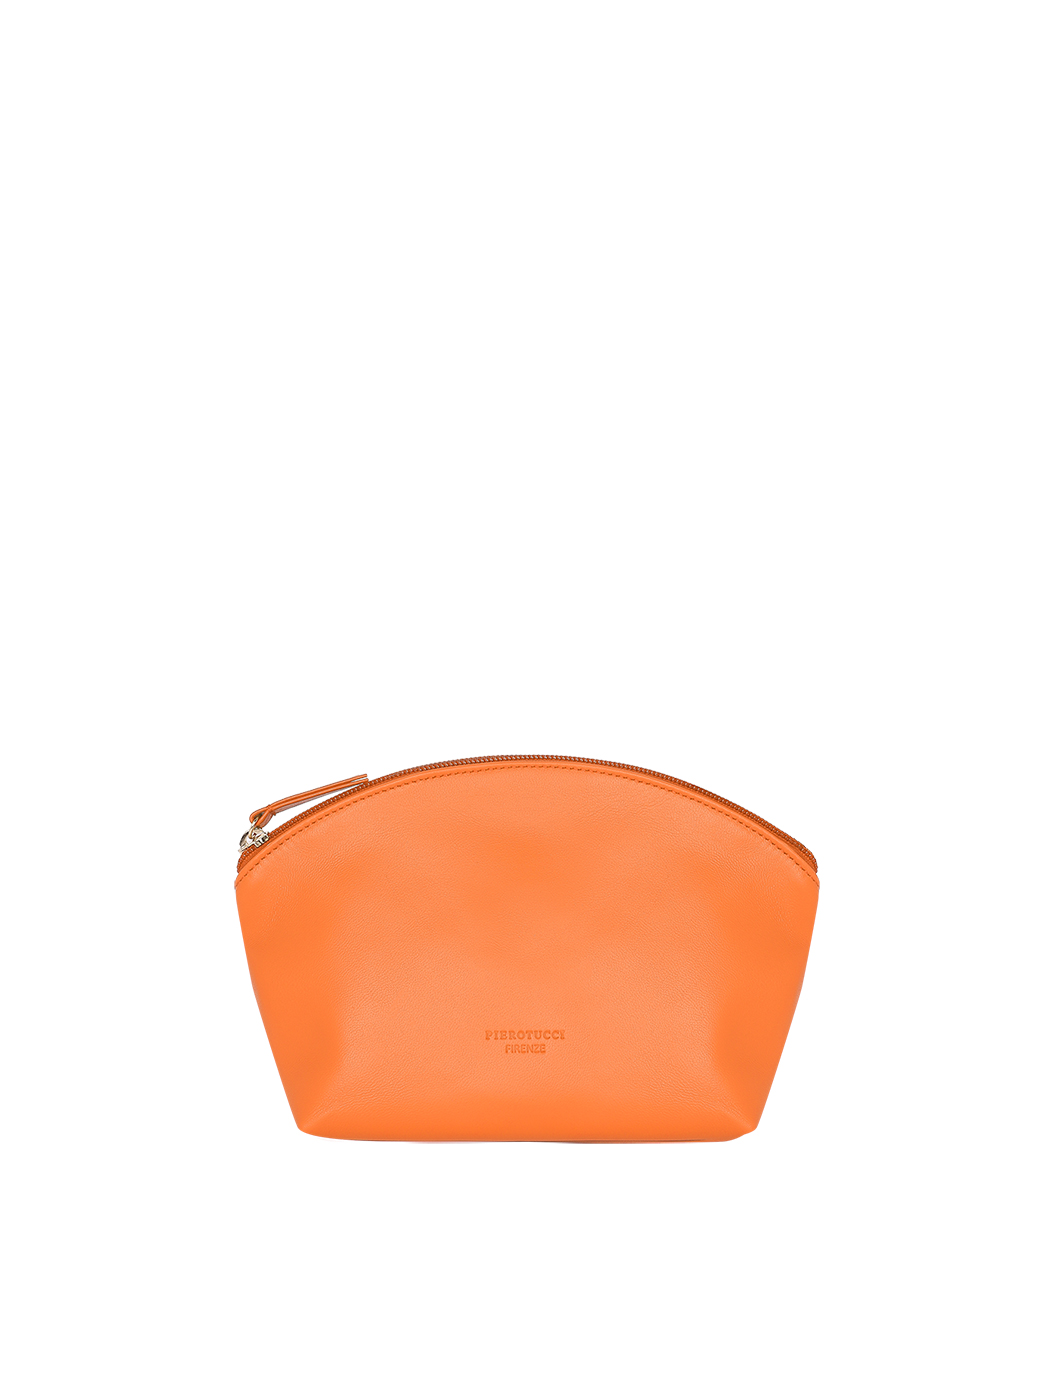 Клатч среднего размера на ремне оранжевого цвета